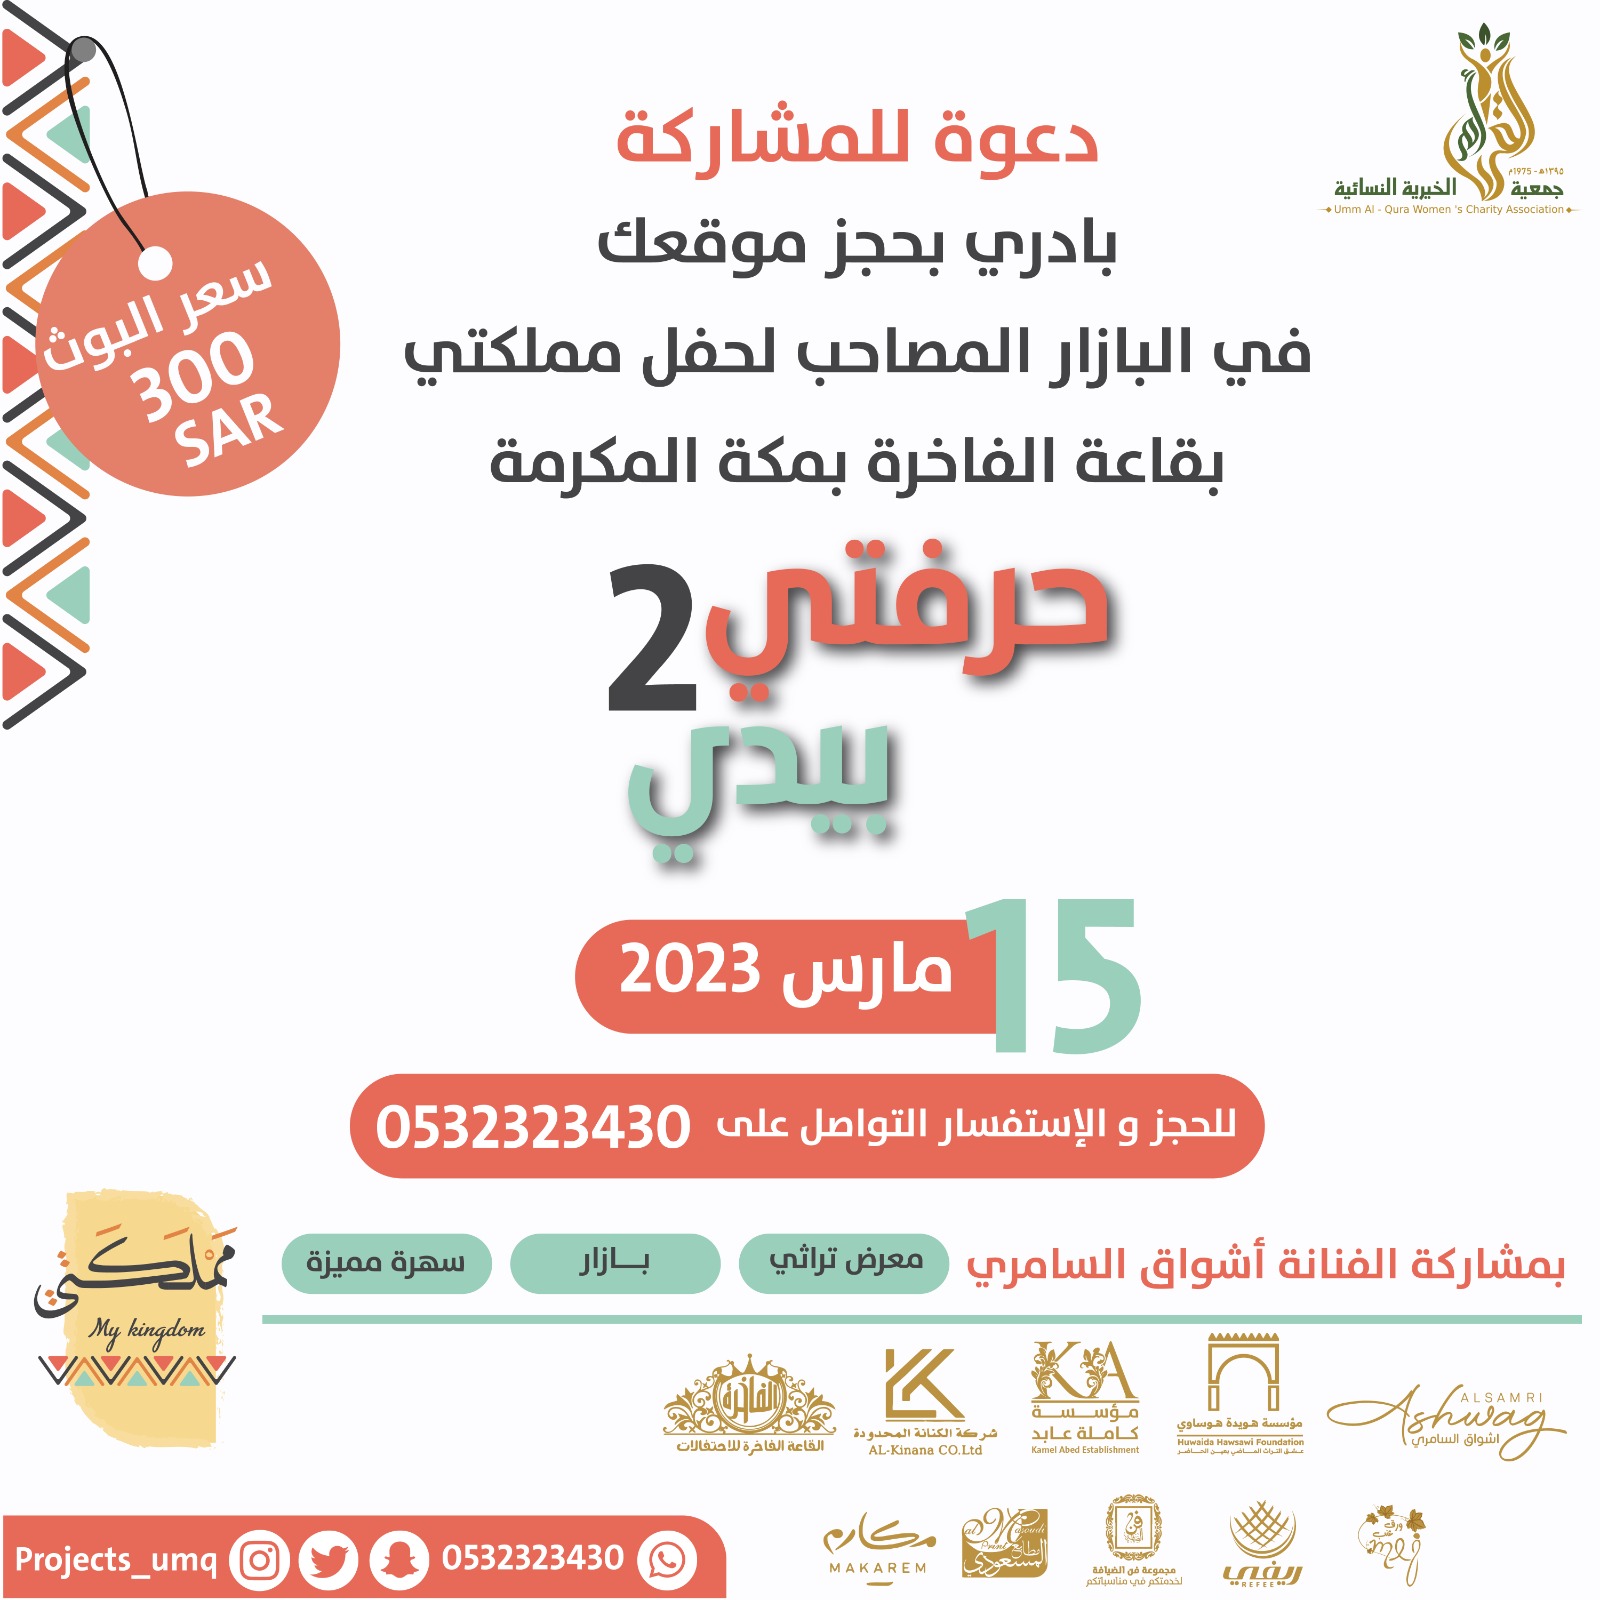  2دعوة للمشاركة في البازار المصاحب لحفل مملكتي بقاعة الفاخرة مكة المكرمة حرفتي بيدي